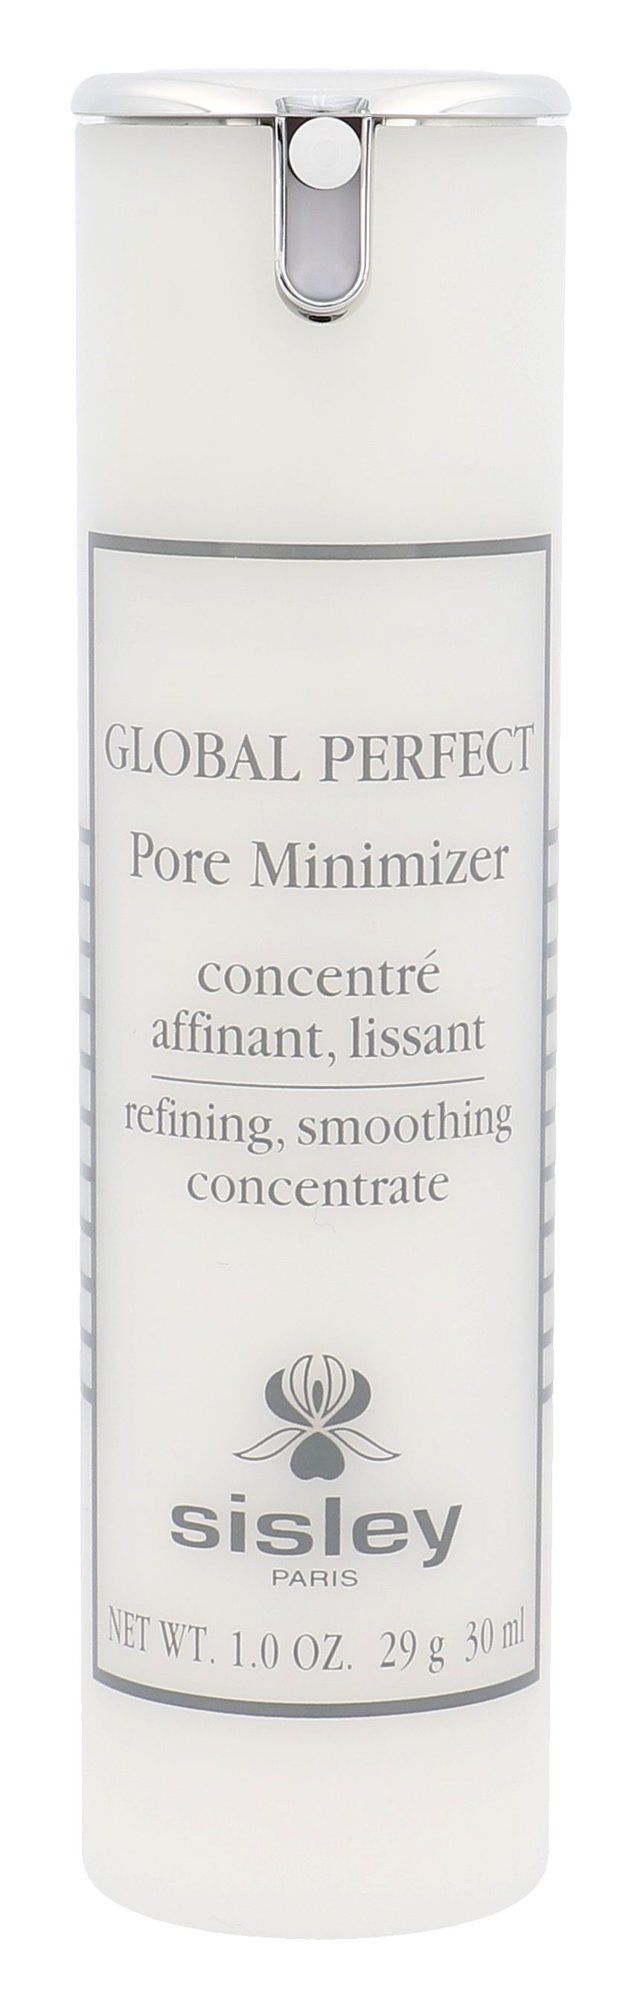 Sisley Global Perfect Pore Minimizer 30ml NIŠINIAI Veido serumas Testeris